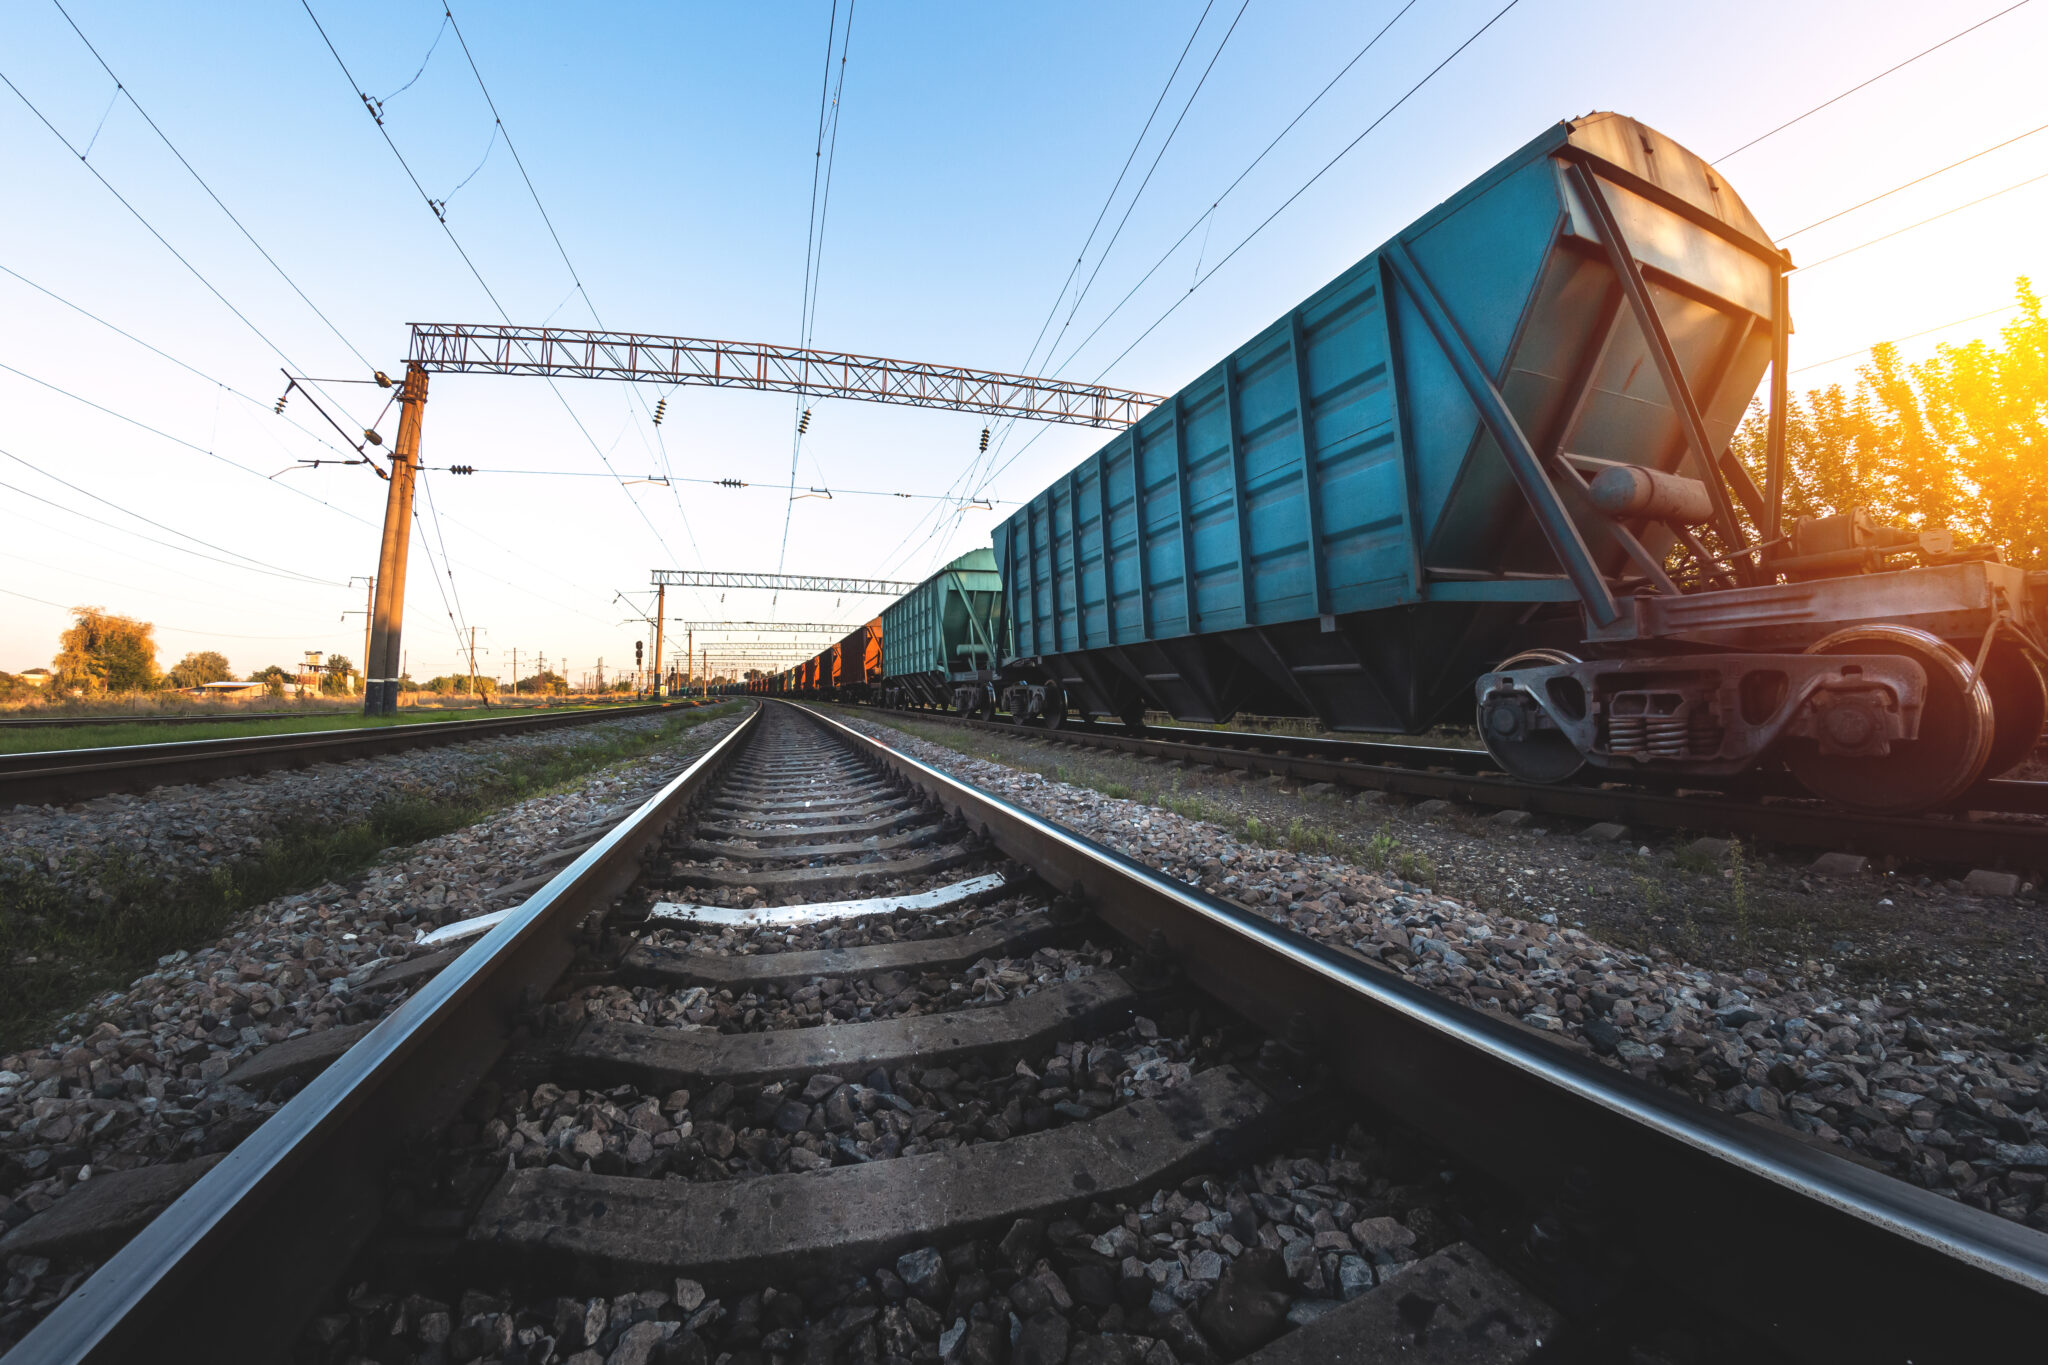 Estariam as demandas empresariais sendo atendidas no setor ferroviário?